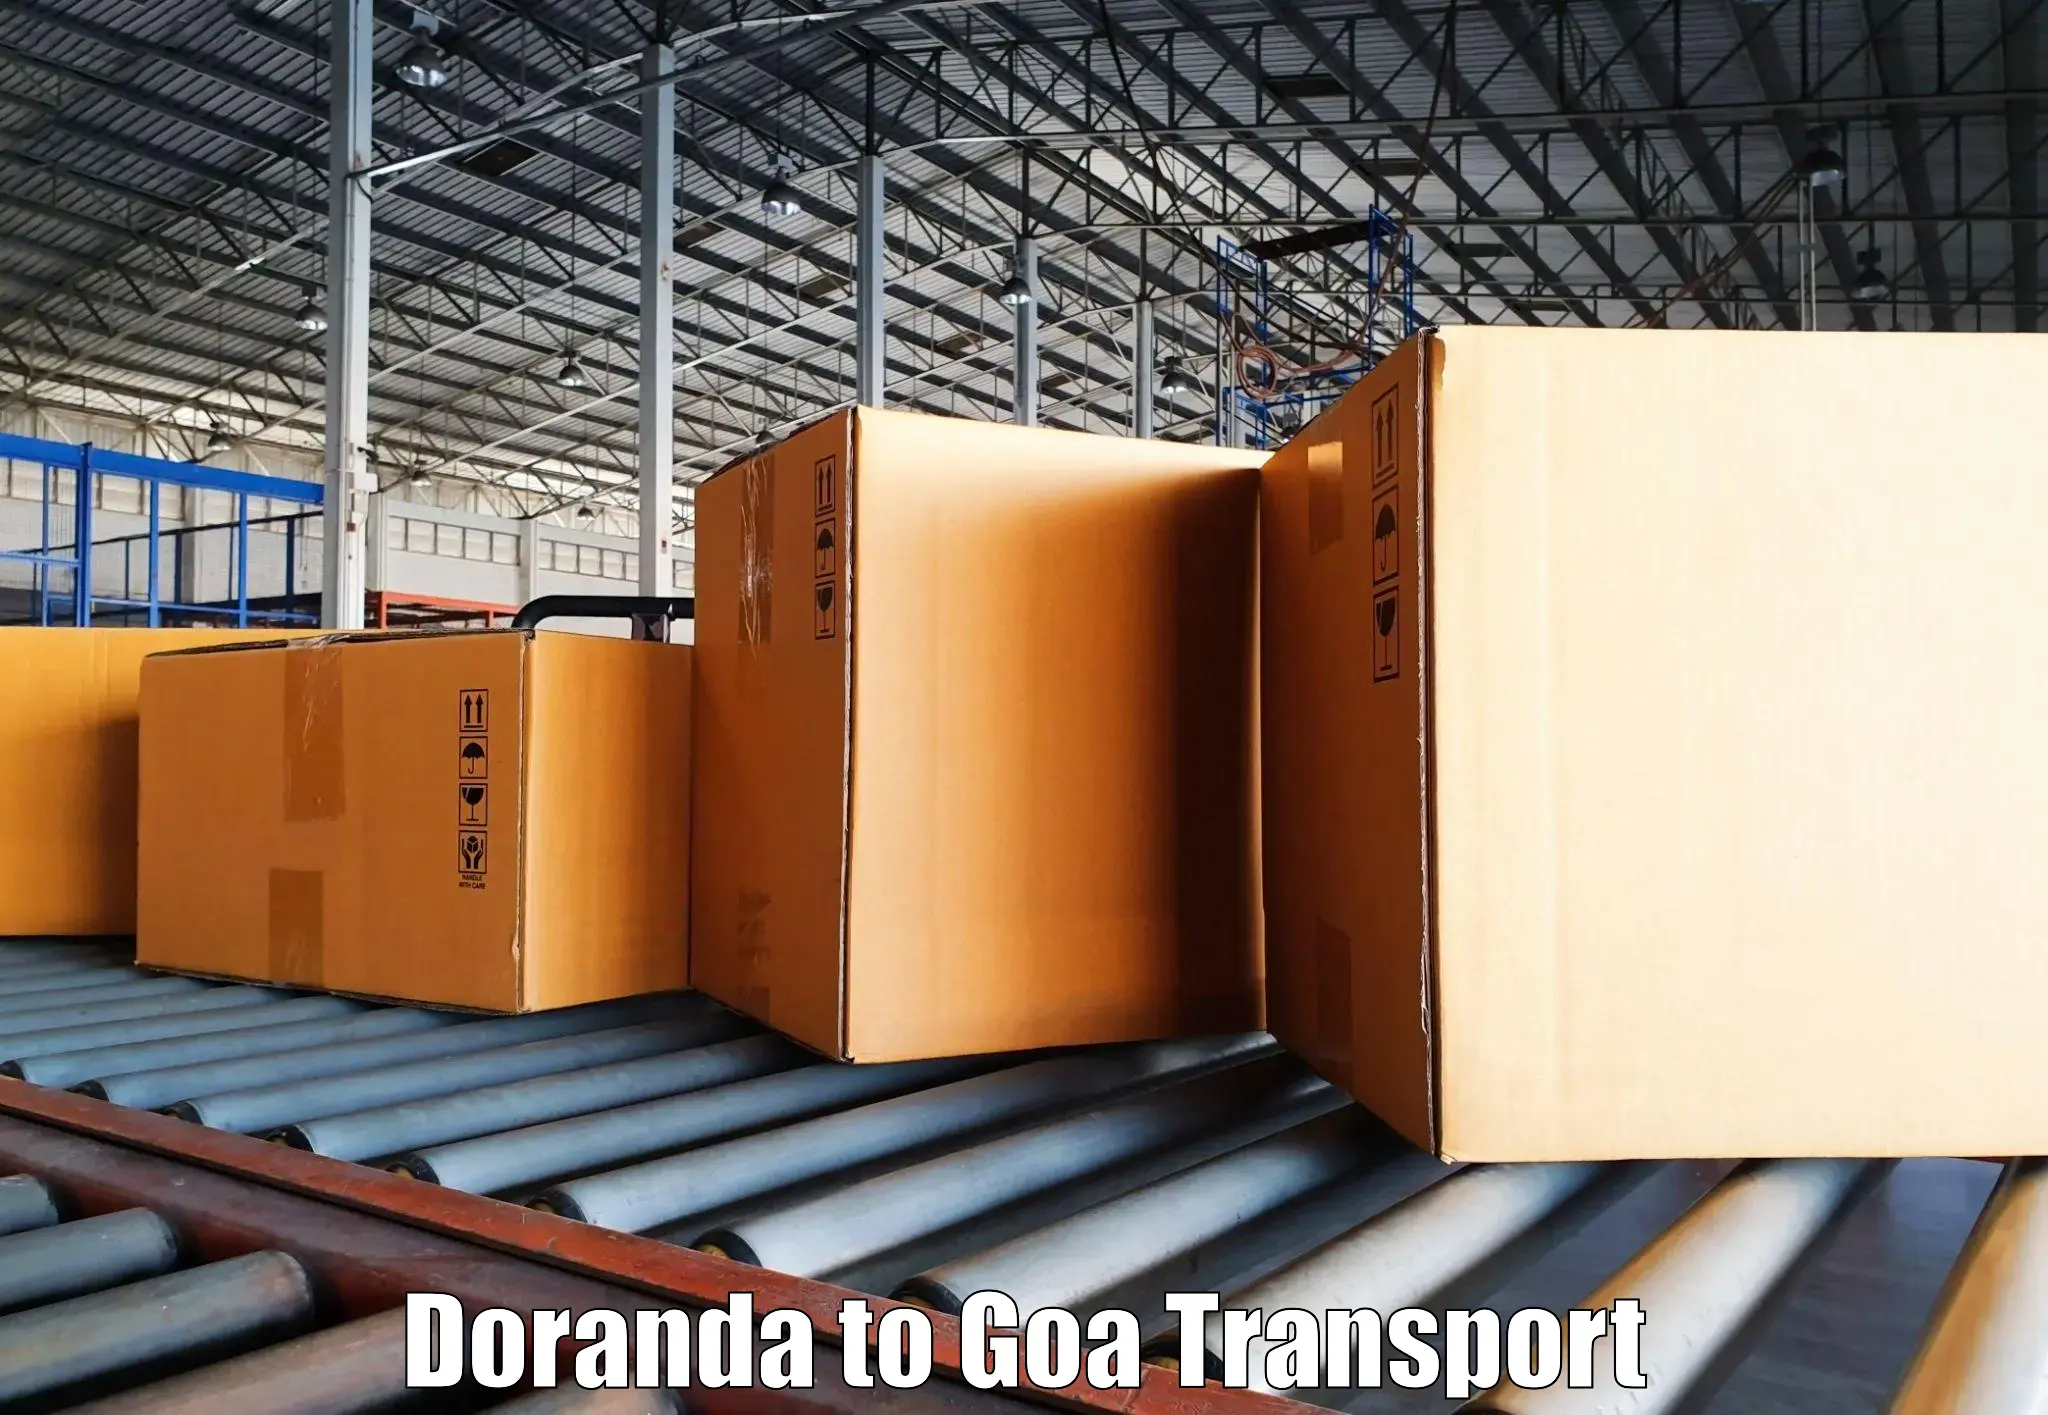 Cargo train transport services Doranda to IIT Goa